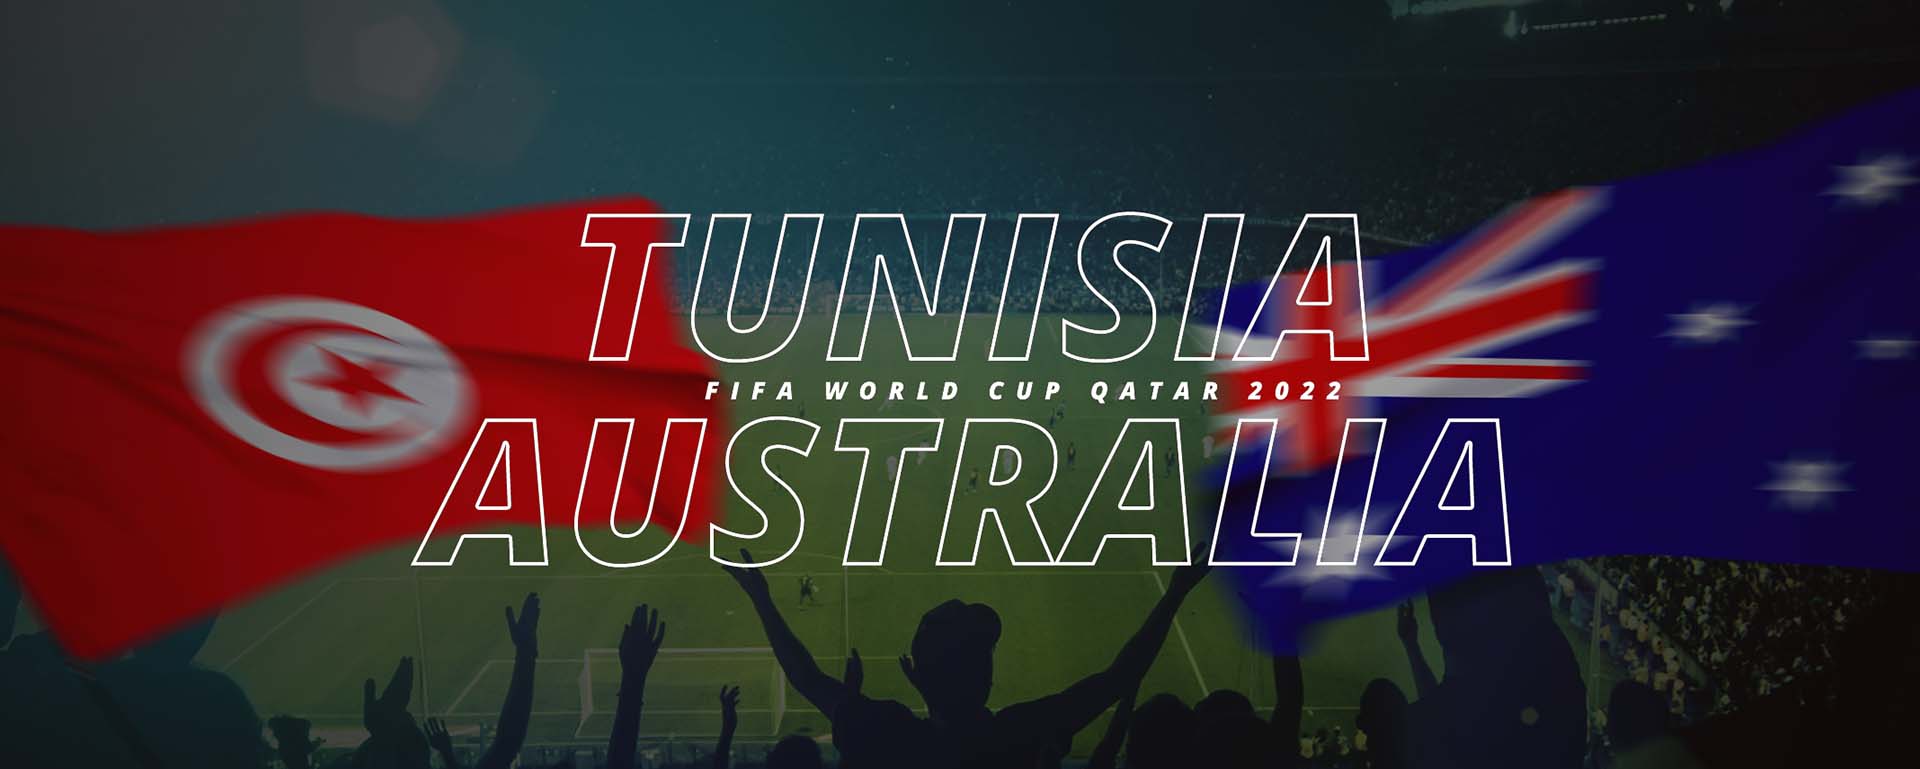 TUNISIA VS AUSTRALIA | FIFA WORLD CUP QATAR 2022